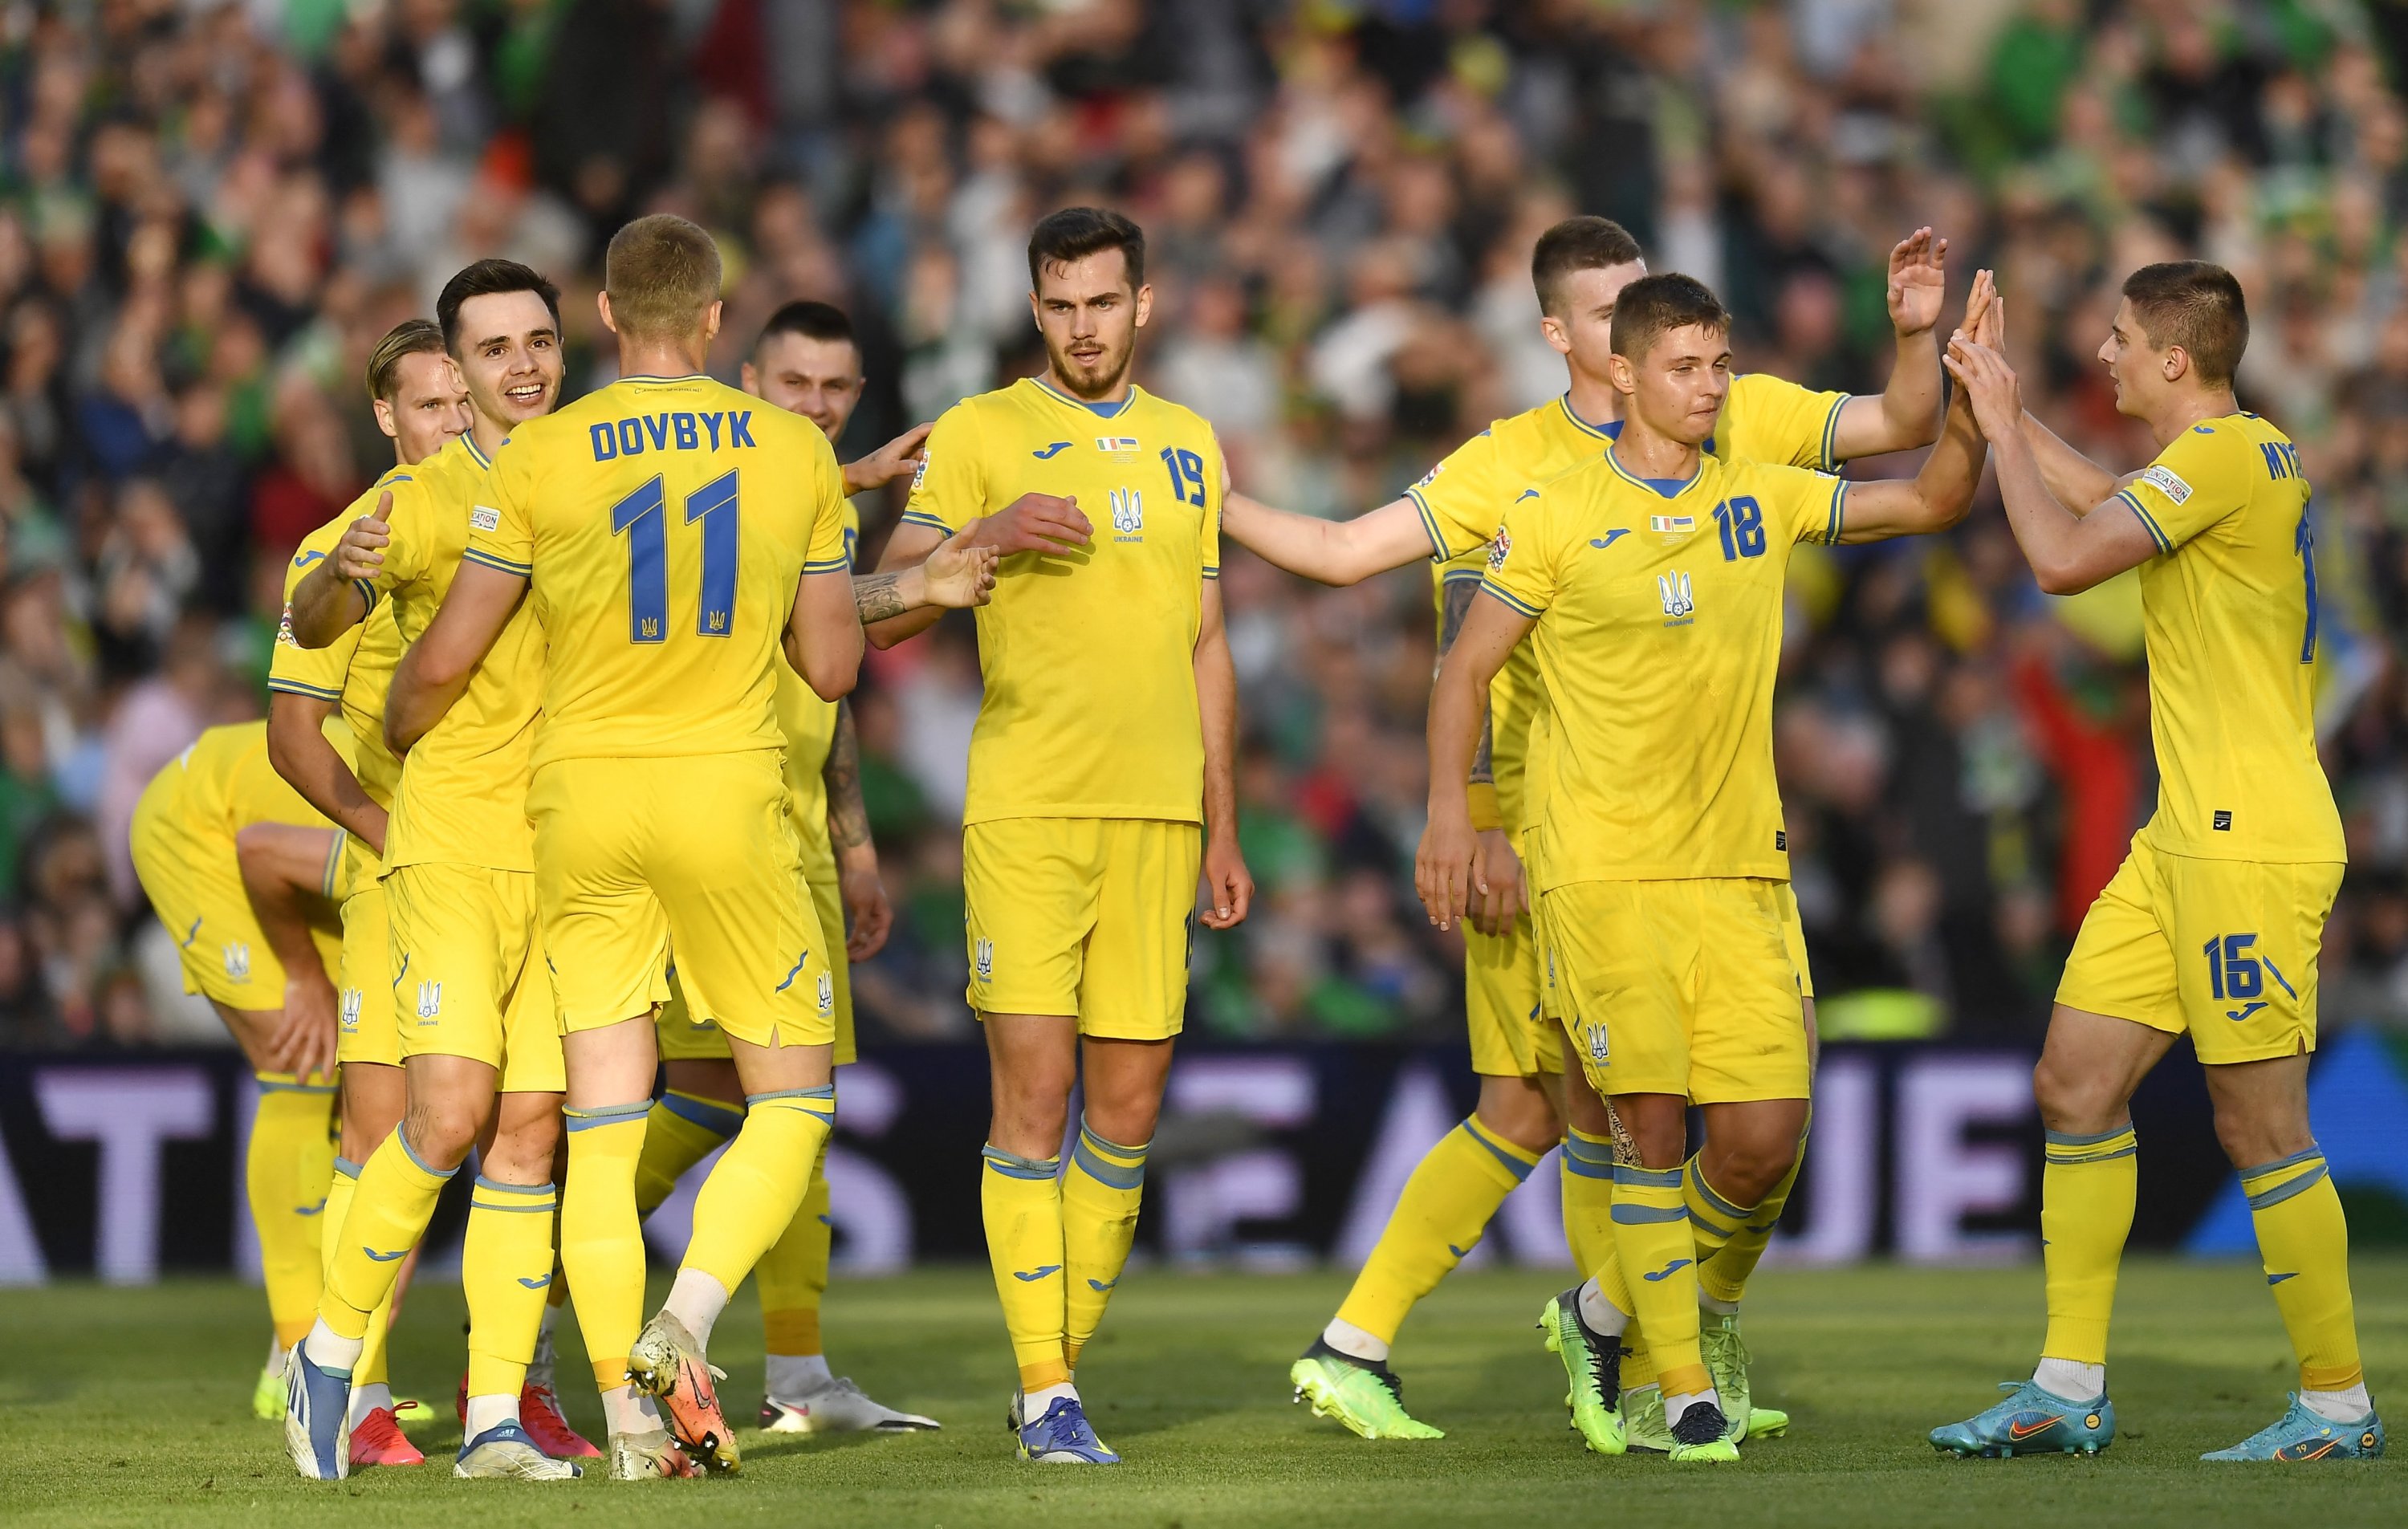 Pemain Ukraina merayakan gol ke gawang Irlandia dalam pertandingan UEFA Nations League, Dublin, Irlandia, 8 Juni 2022. (Foto Reuters)